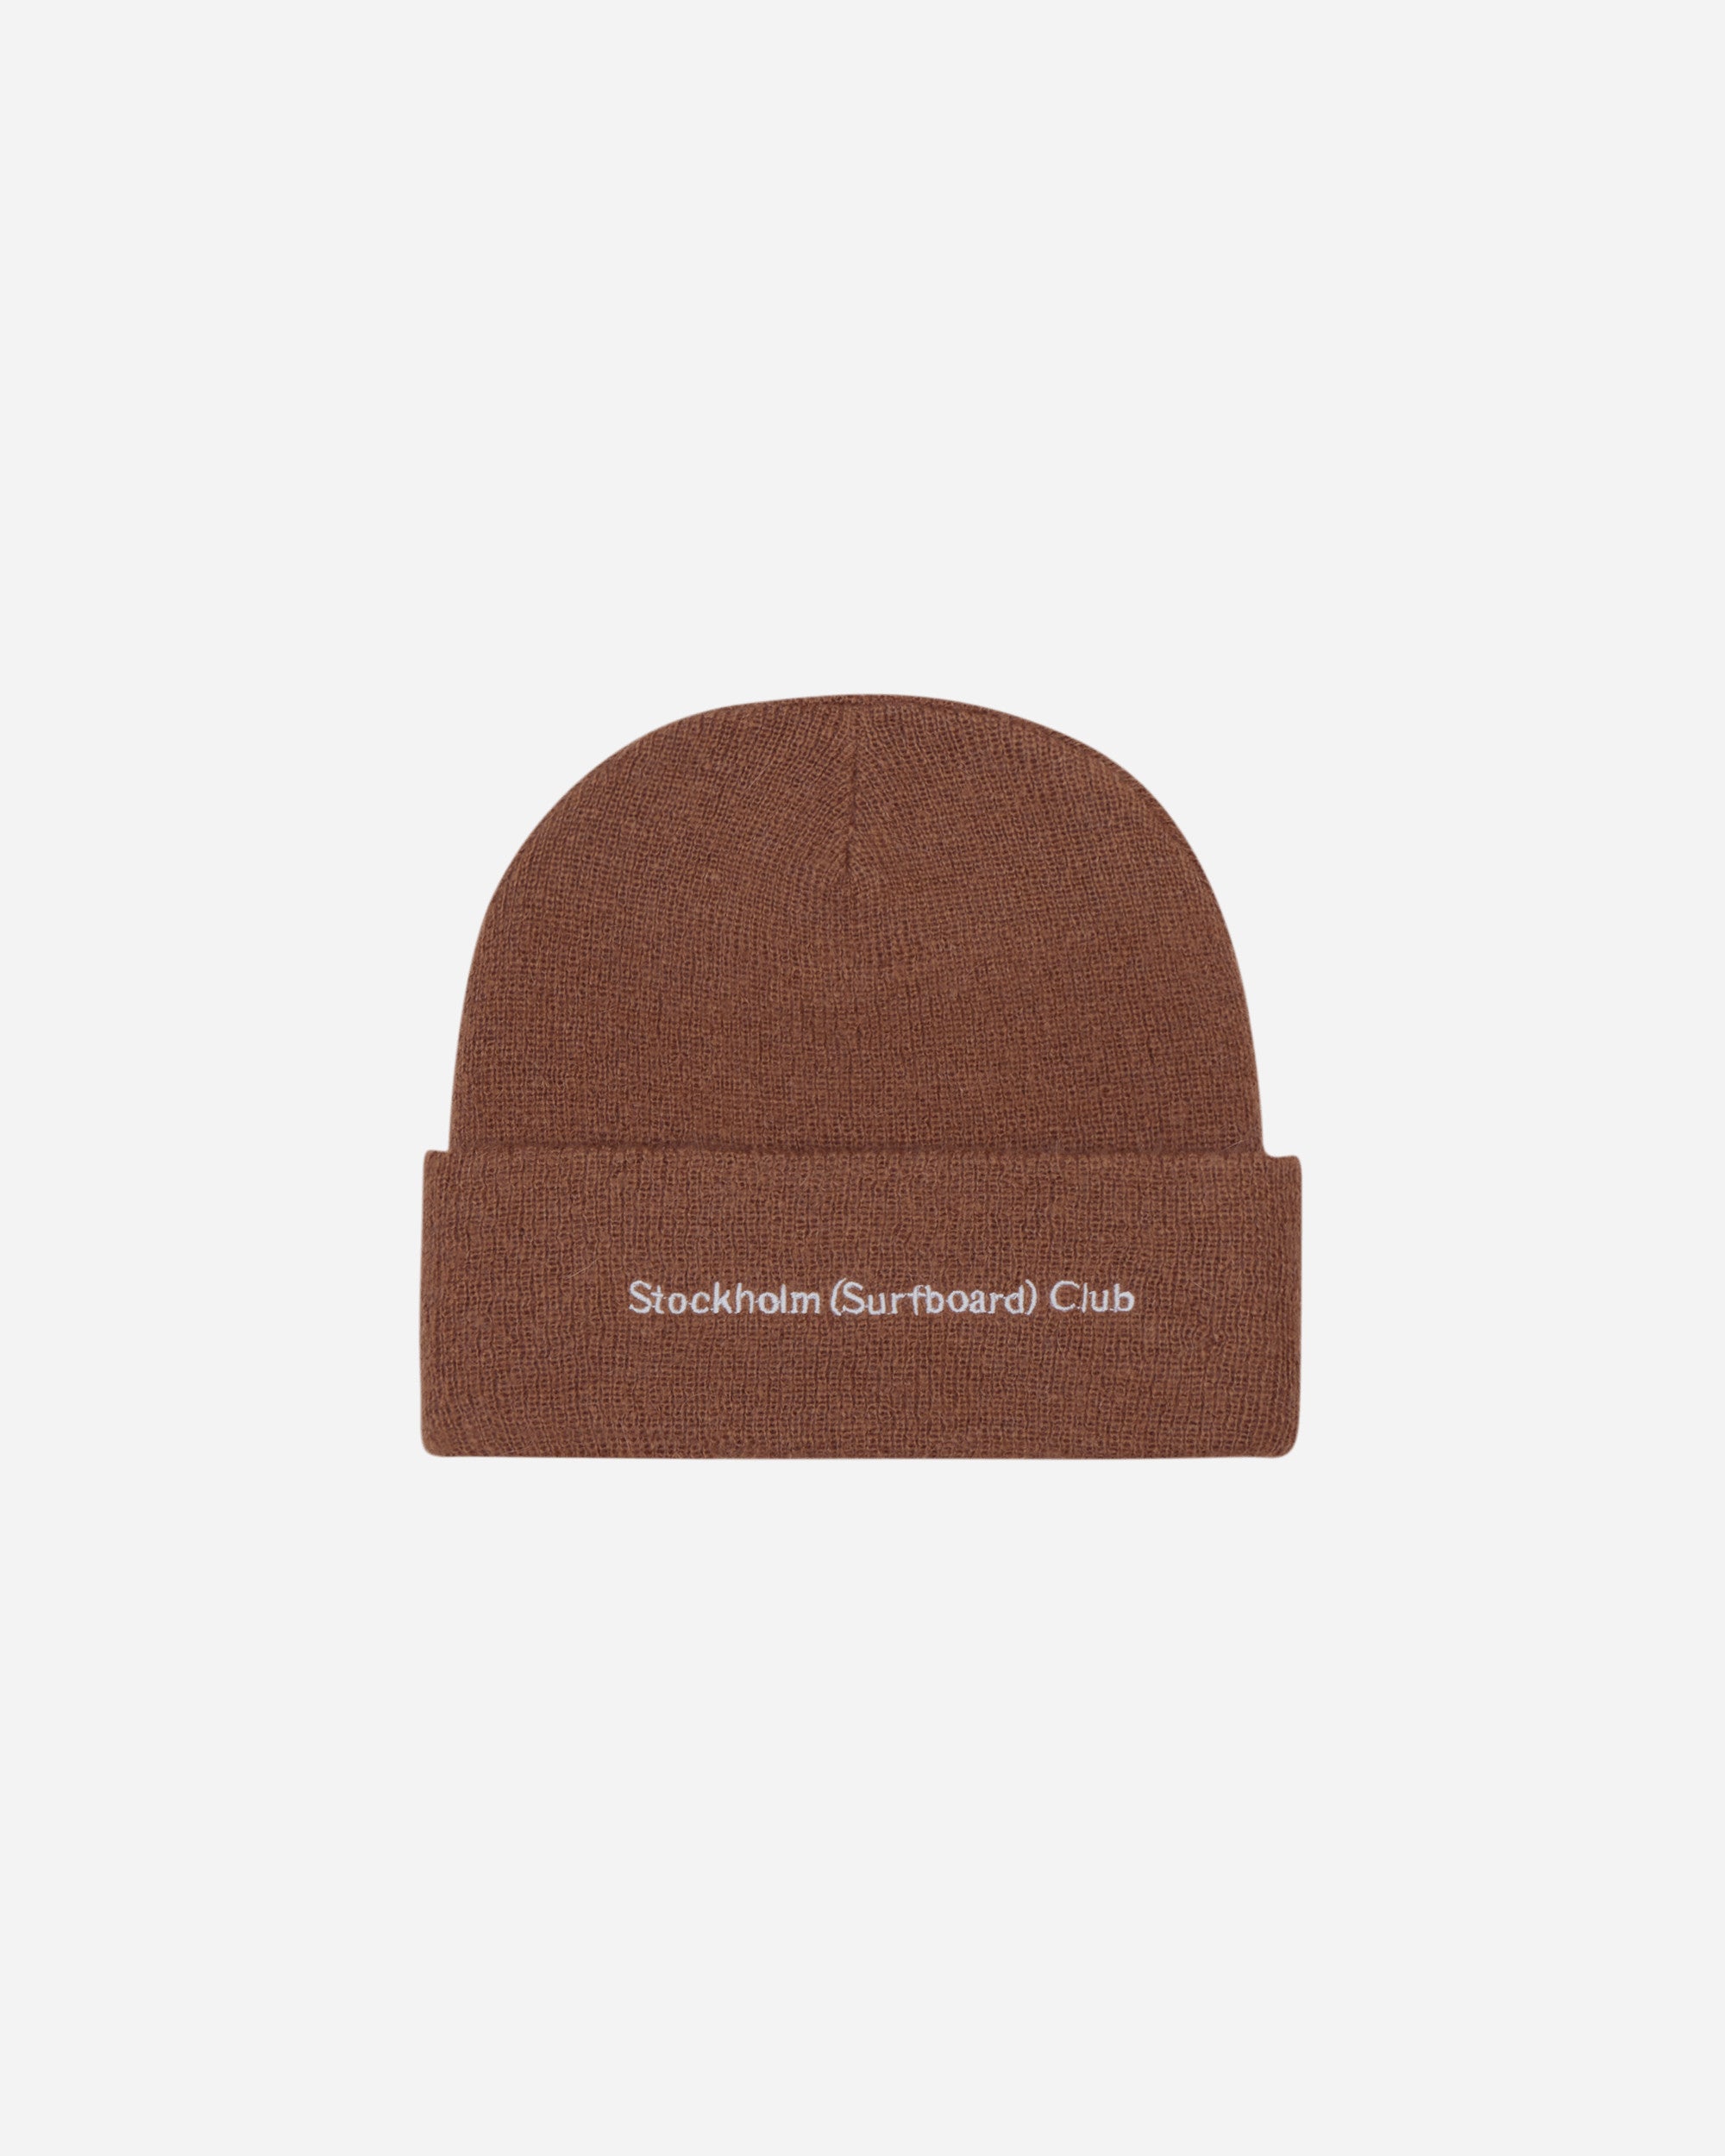 Stockholm (Surfboard) Club Beanie Brown Hats Beanies BU7B30 001